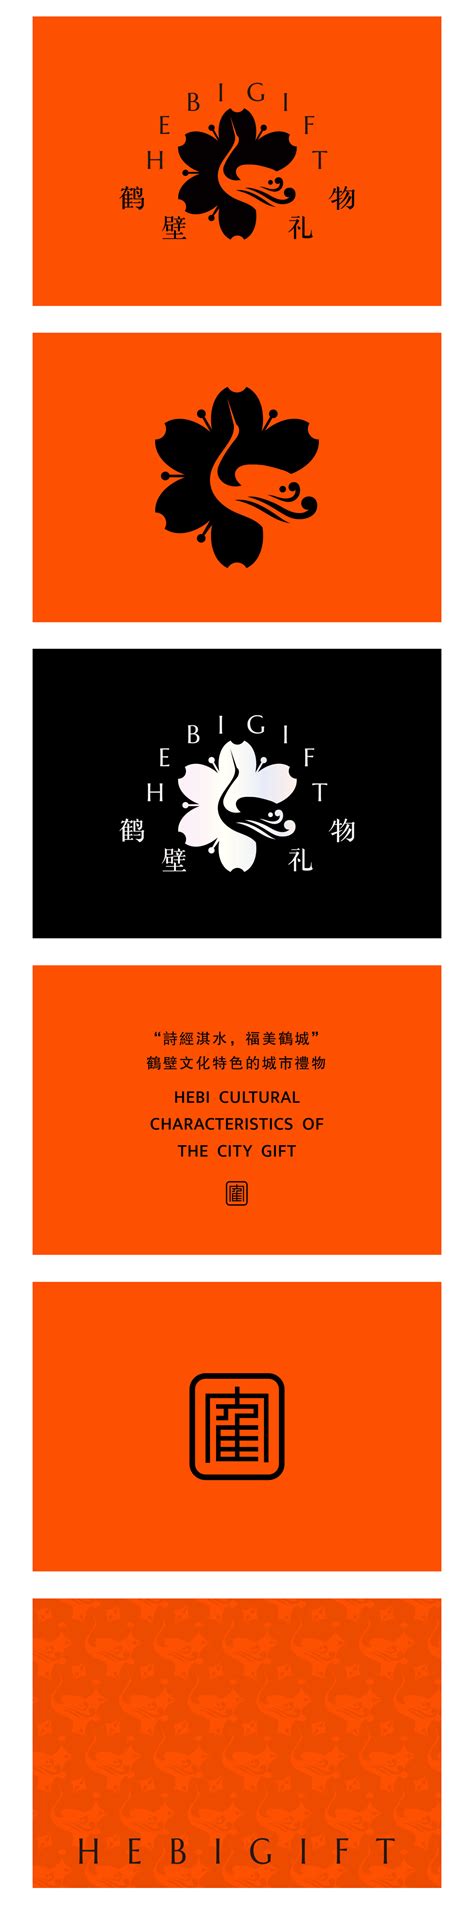 鹤壁茶咖米休闲食品-logo设计公司_郑州包装设计_画册设计_郑州凸凹品牌设计公司